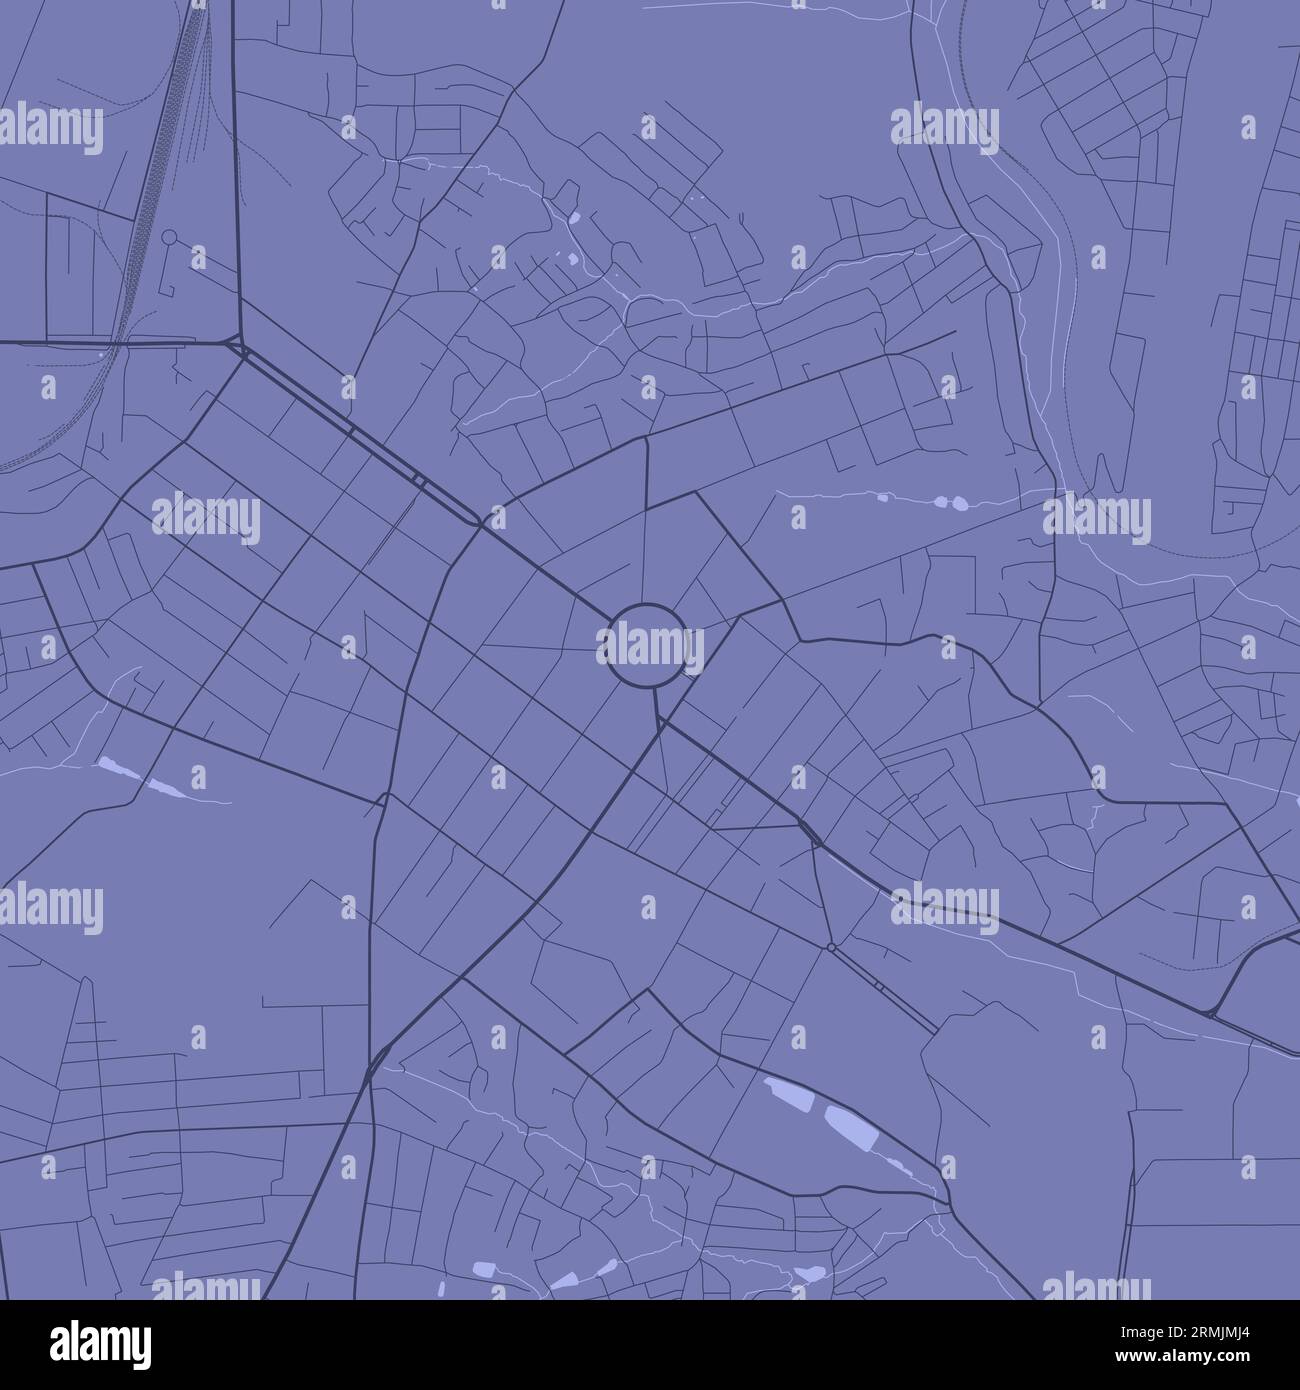 Carte de Blue Poltava, Ukraine, carte détaillée de la municipalité, panorama Skyline. Carte touristique graphique décorative du territoire de Poltava. Vecteur libre de droit illus Illustration de Vecteur